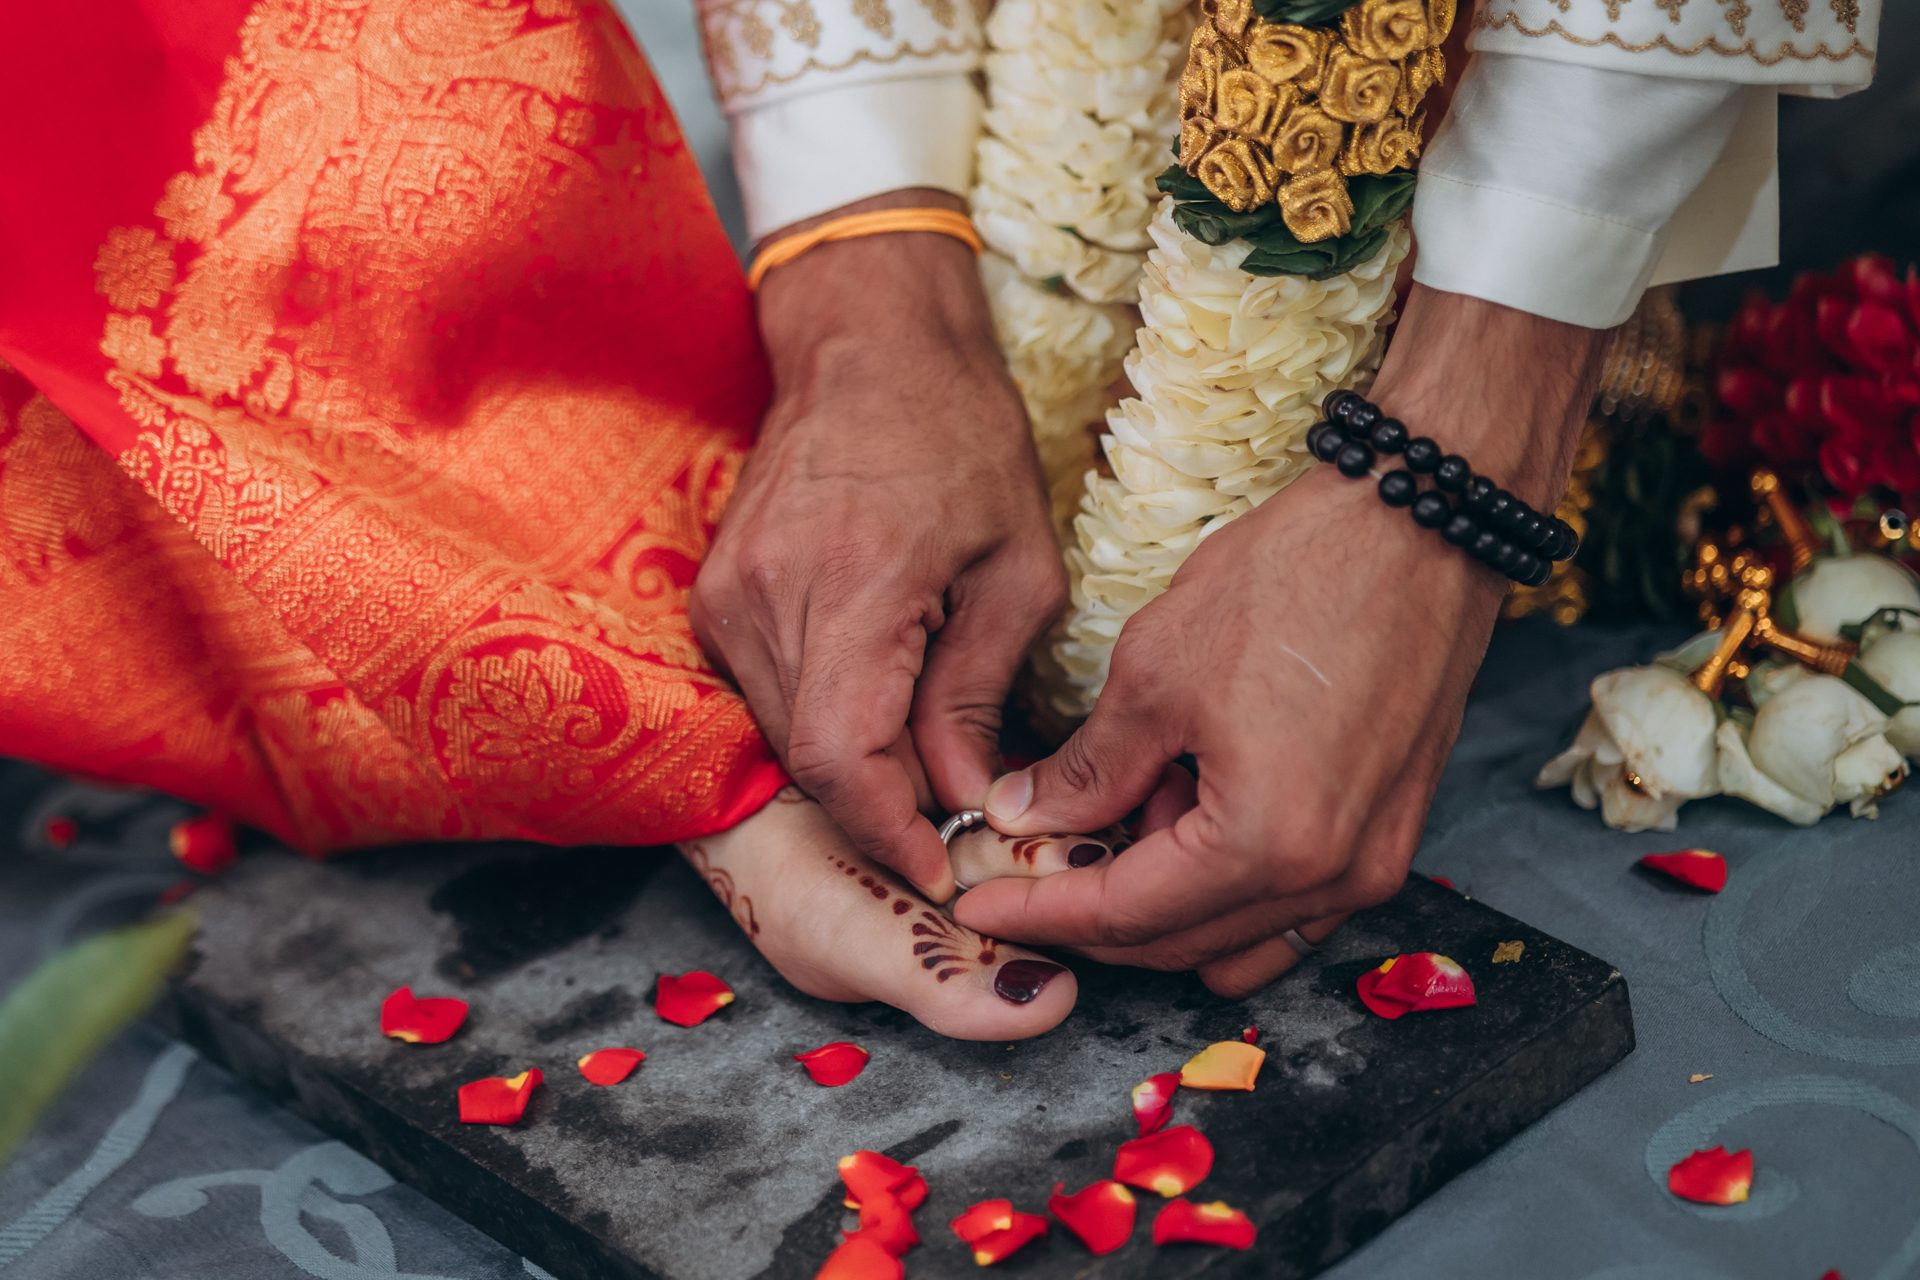 Unique tamil marriage